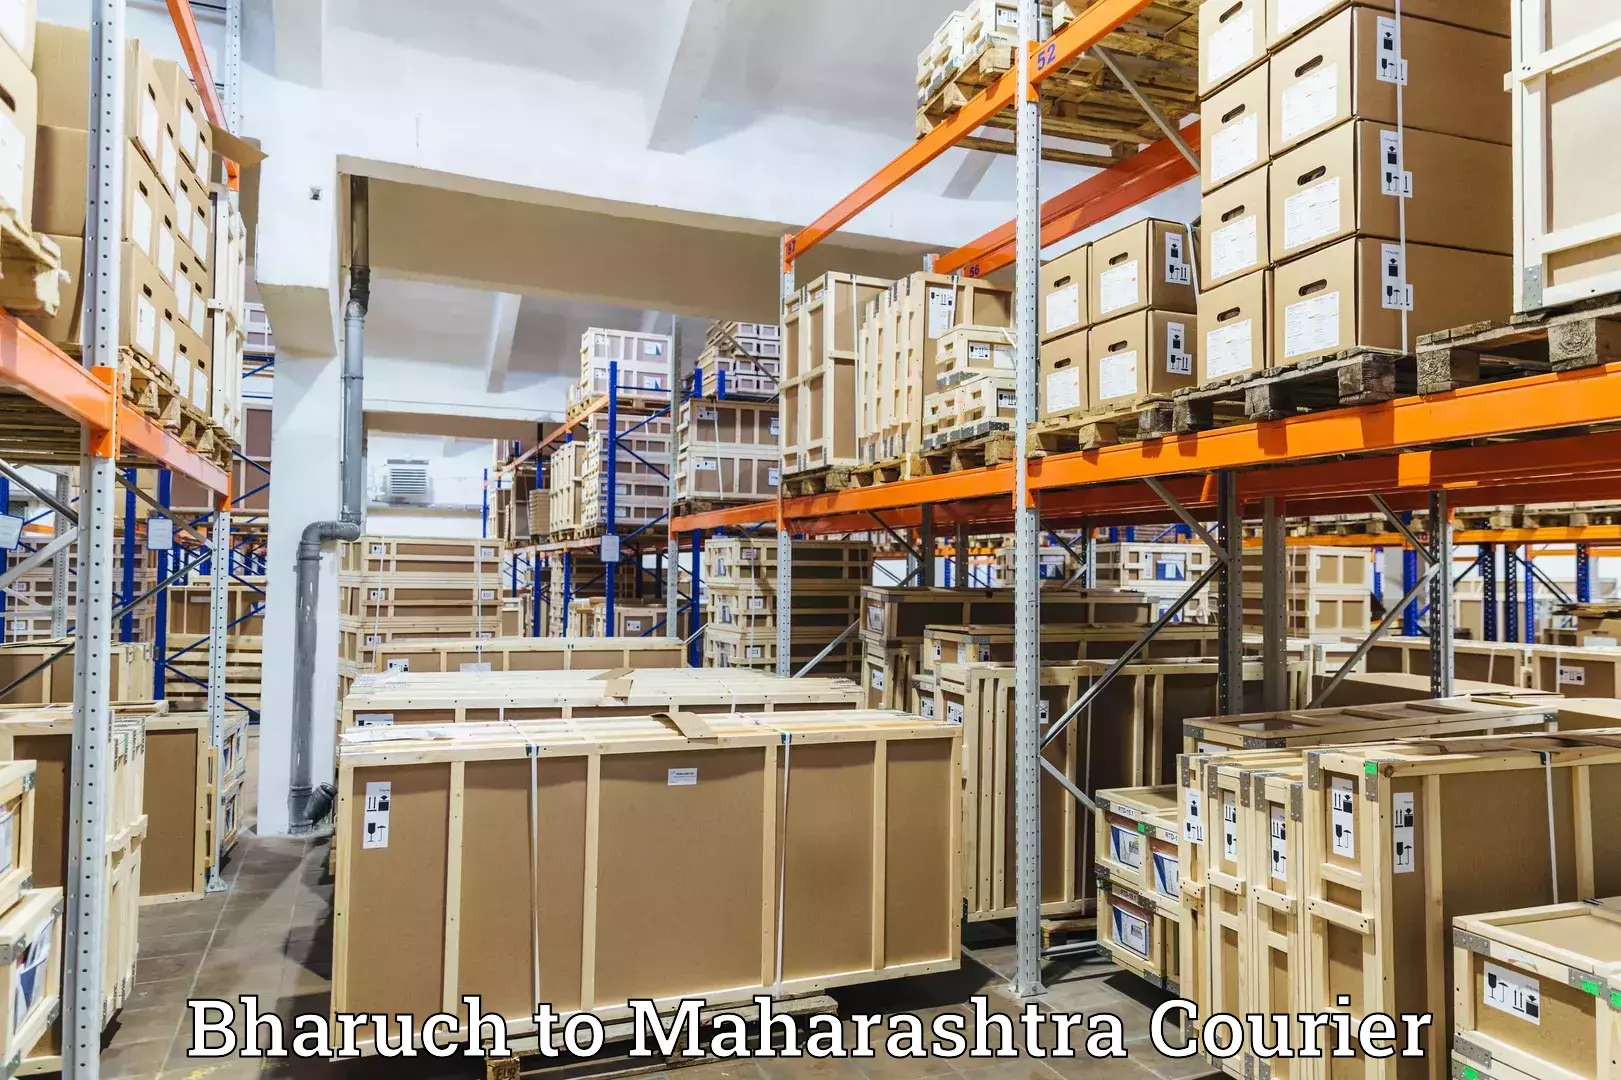 Courier service comparison Bharuch to Ballarpur